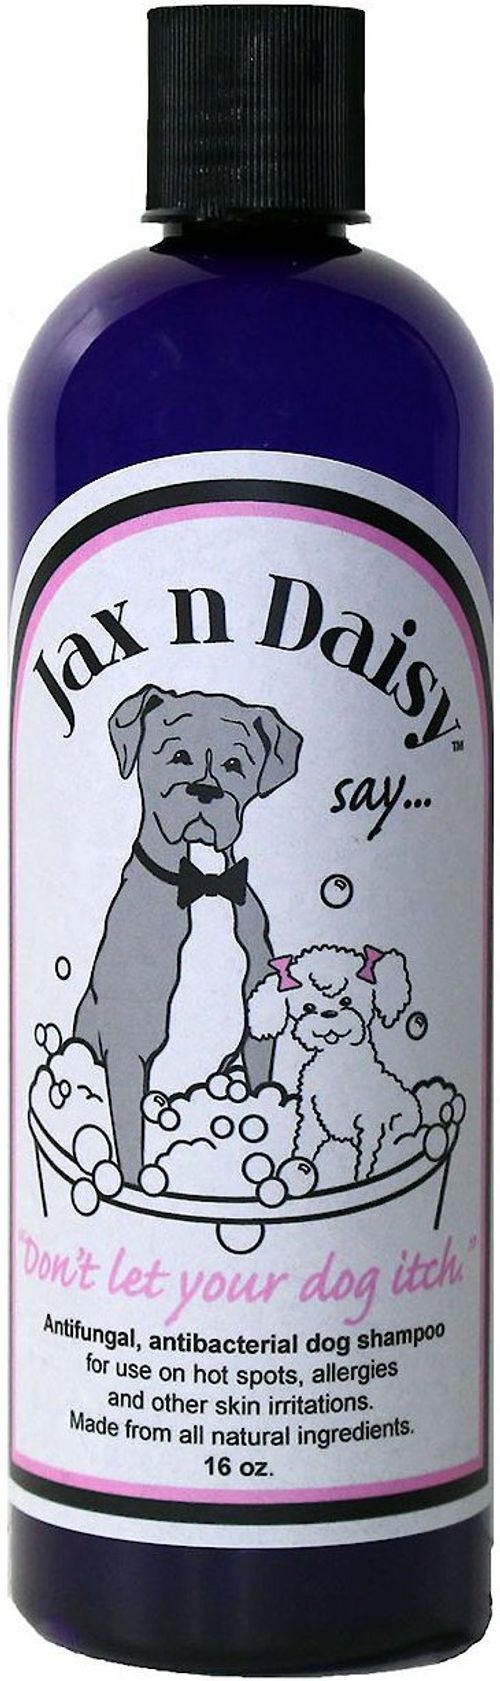 jax and daisy dog shampoo